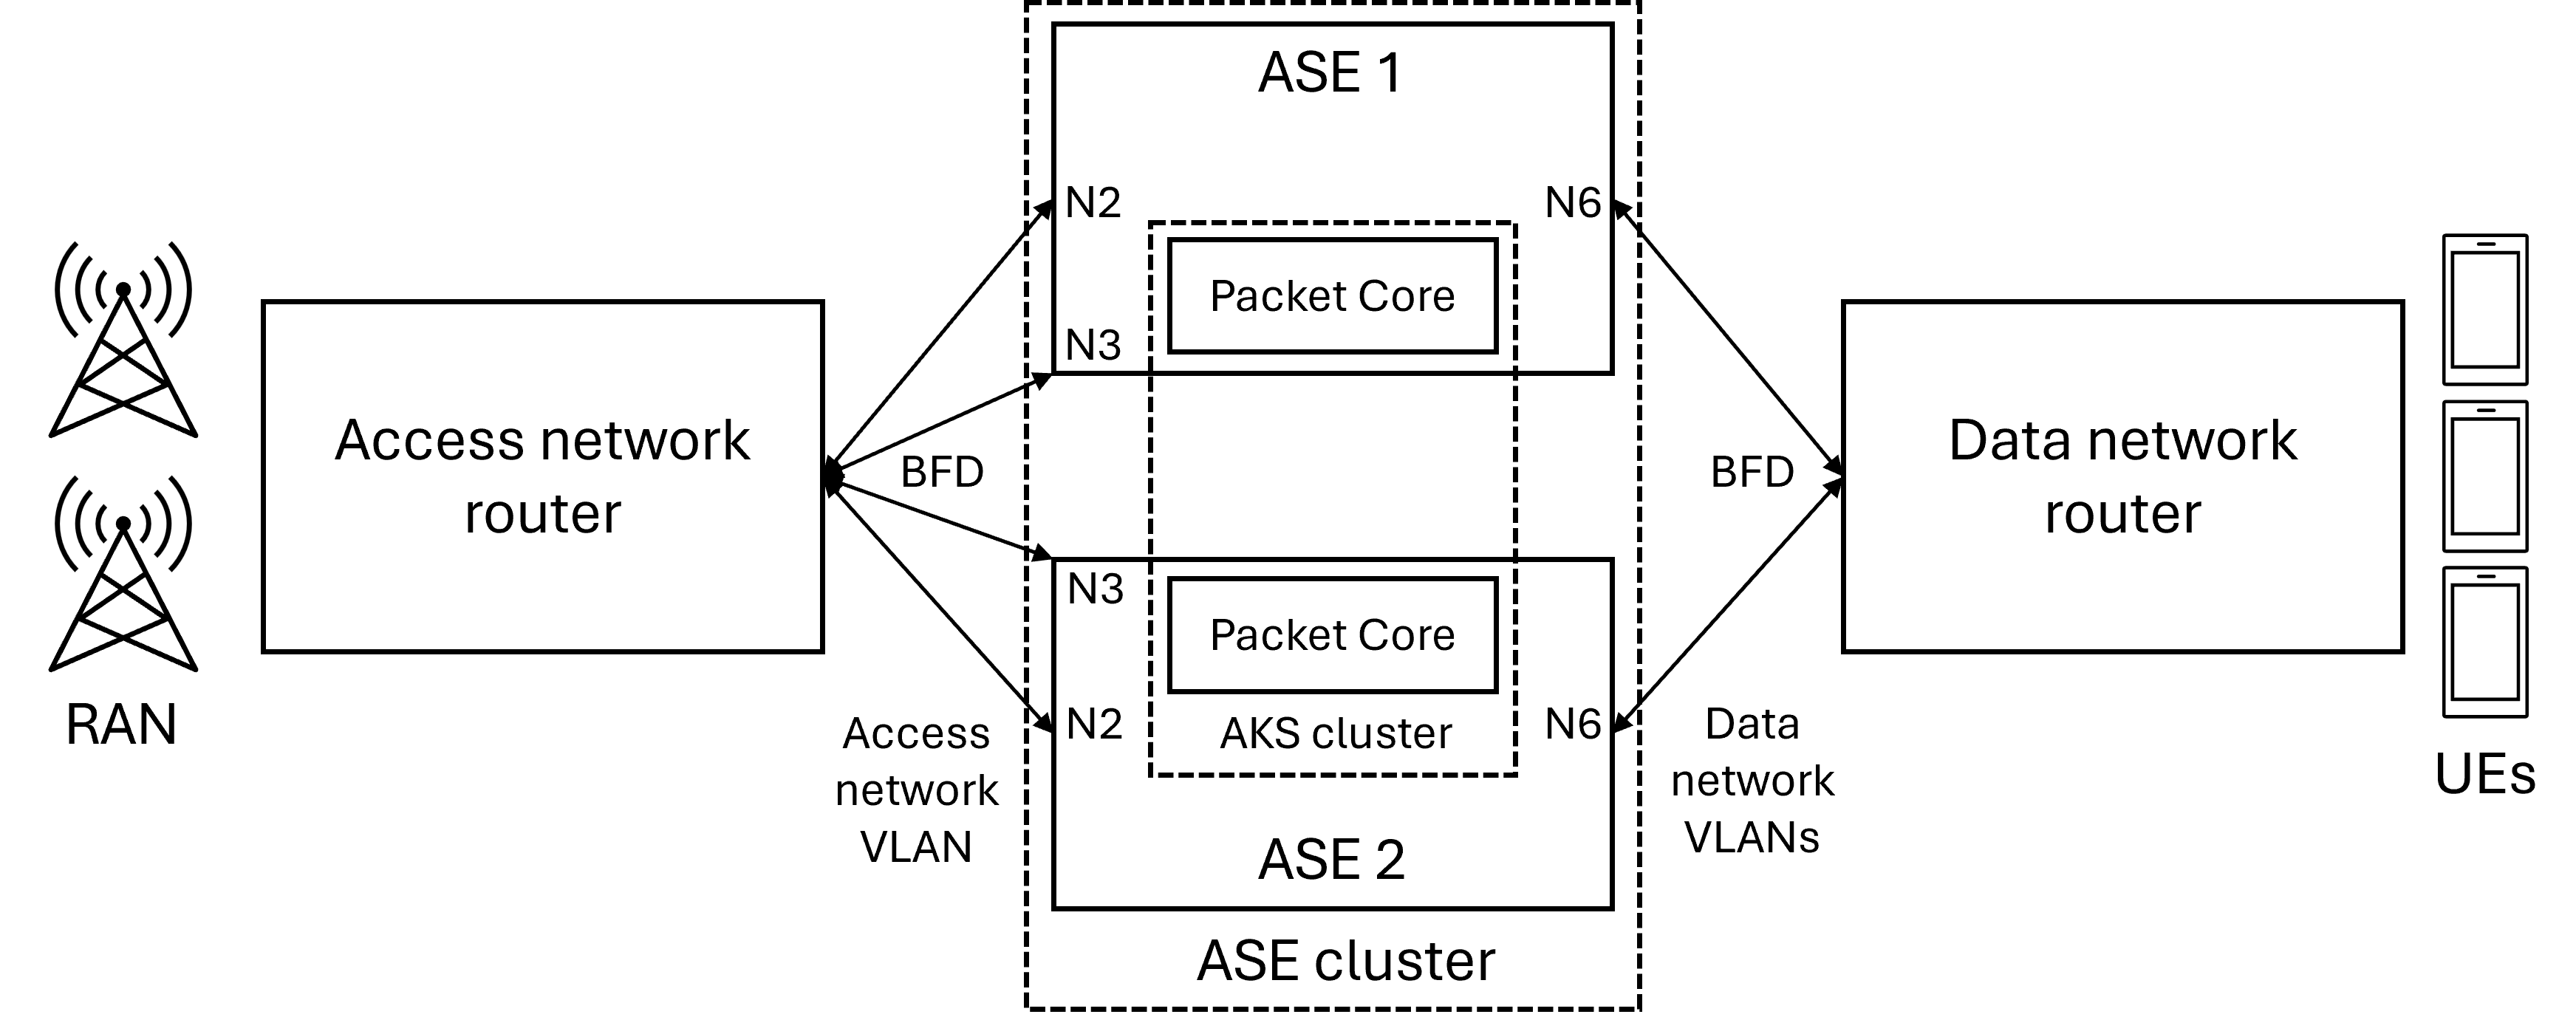 Схема, показывающая высокодоступное развертывание с одним маршрутизатором сети доступа и одним маршрутизатором сети данных.